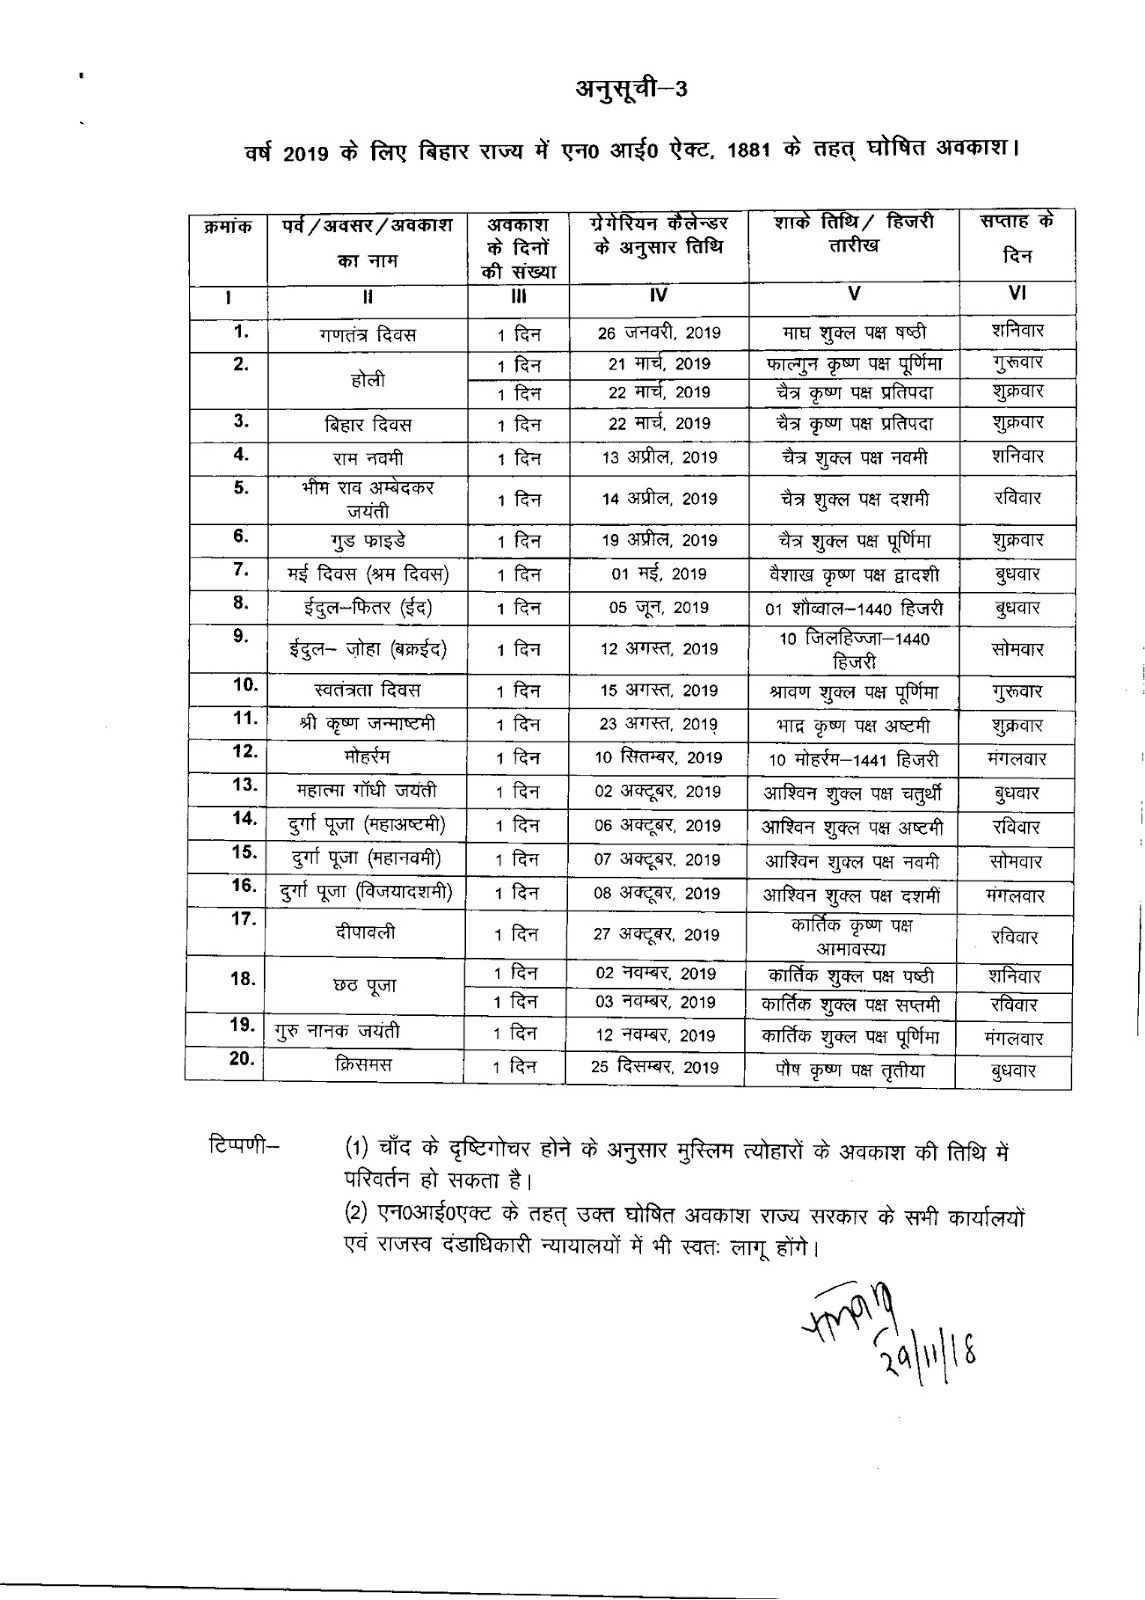 Bihar Government Calendar 2019 #educratsweb regarding Govt Of Bihar Calendar 2020